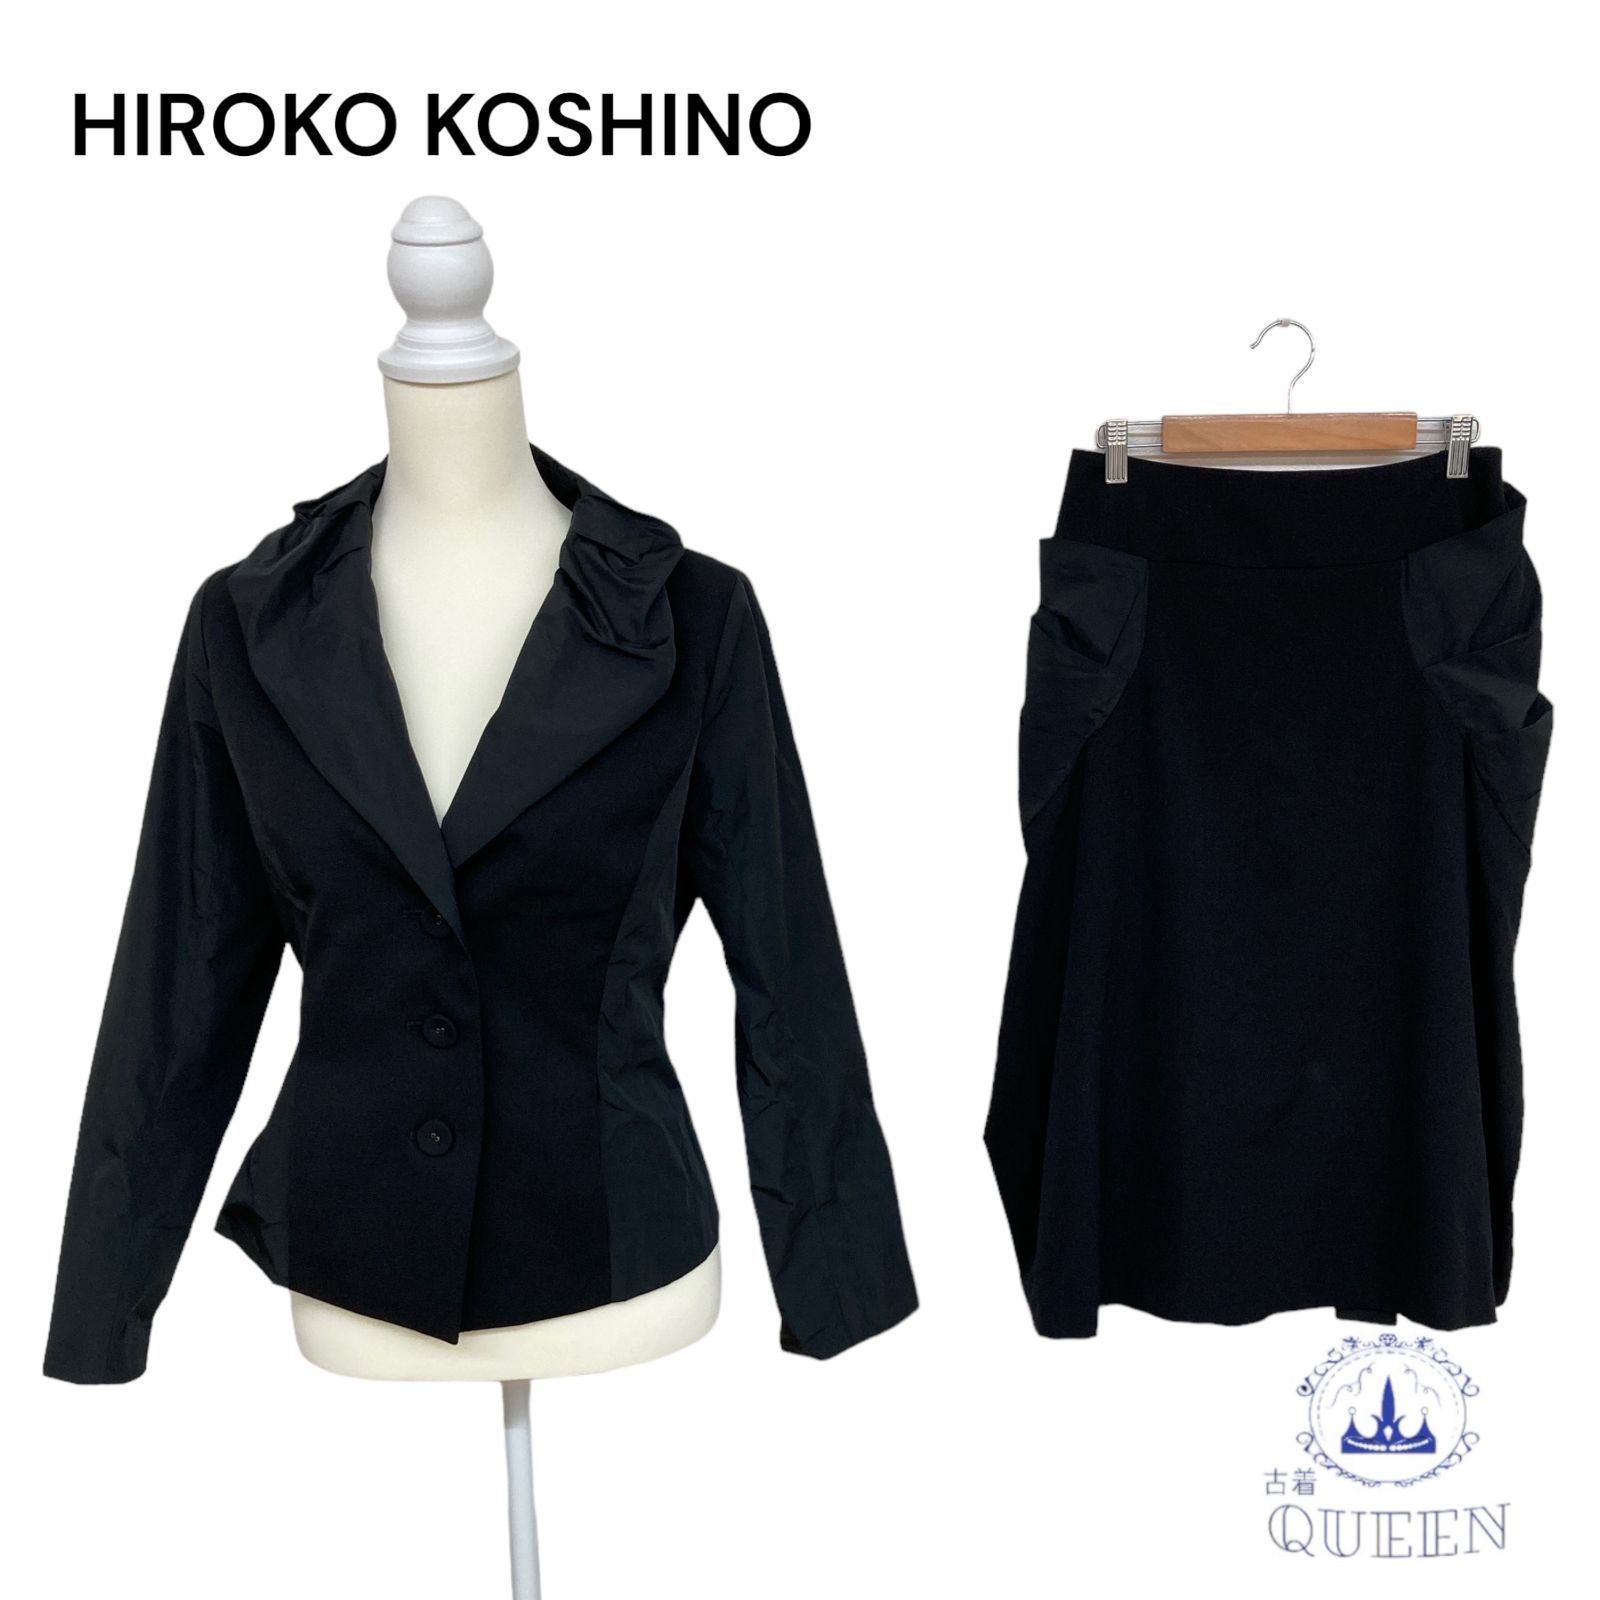 HIROKO KOSHINO スーツ上下セット 国内発送 - スーツ